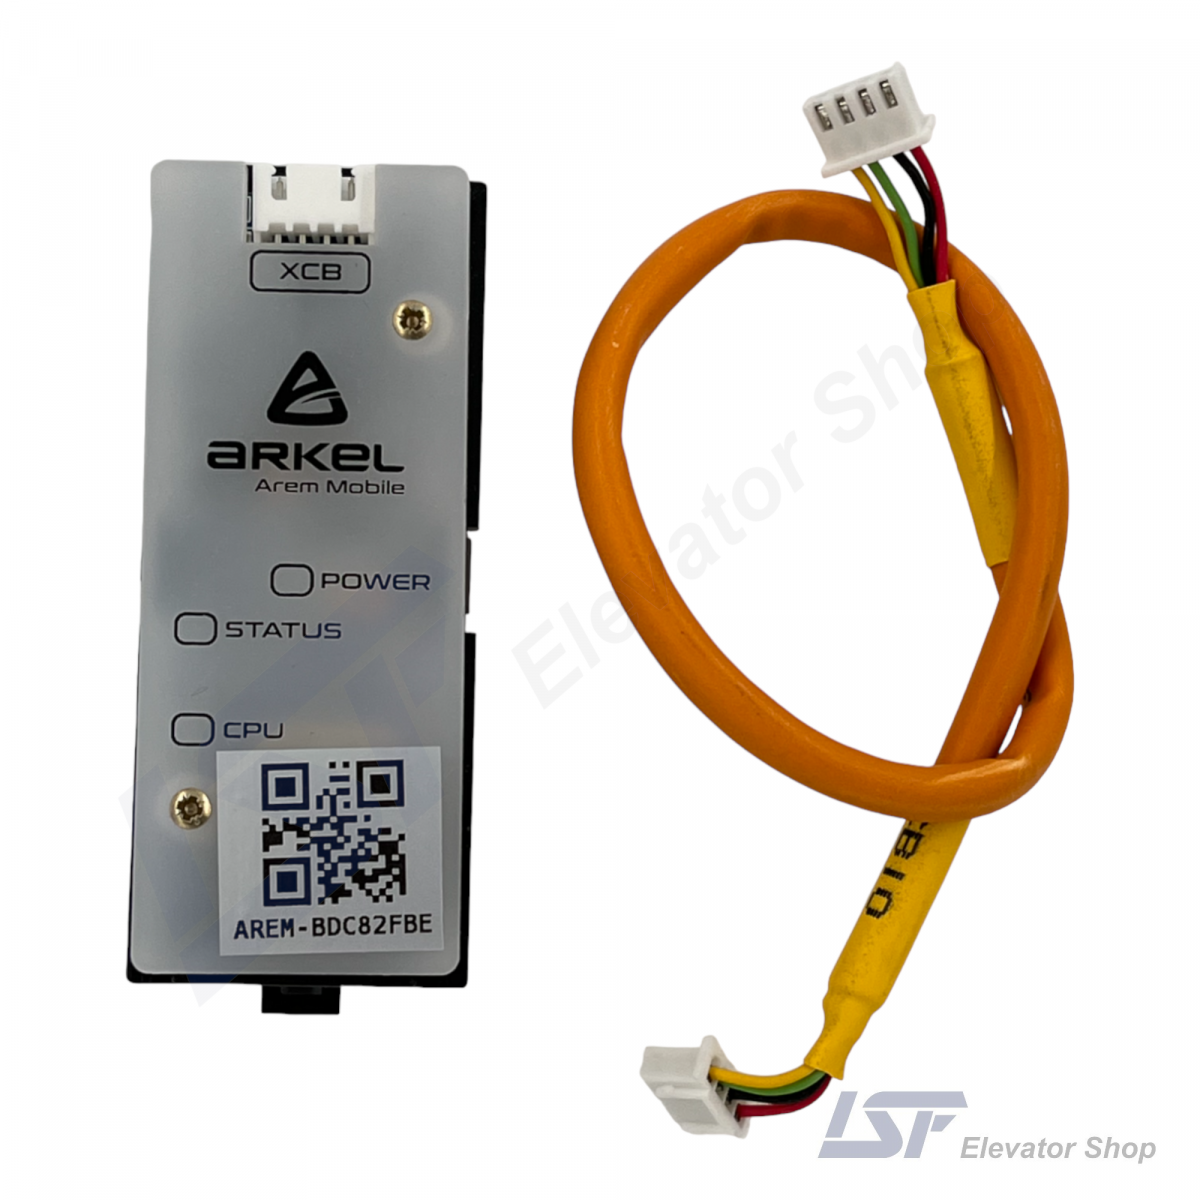 Arkel AREM Mobile Bluetooth Transmitter at ISF Elevator Shop (1)